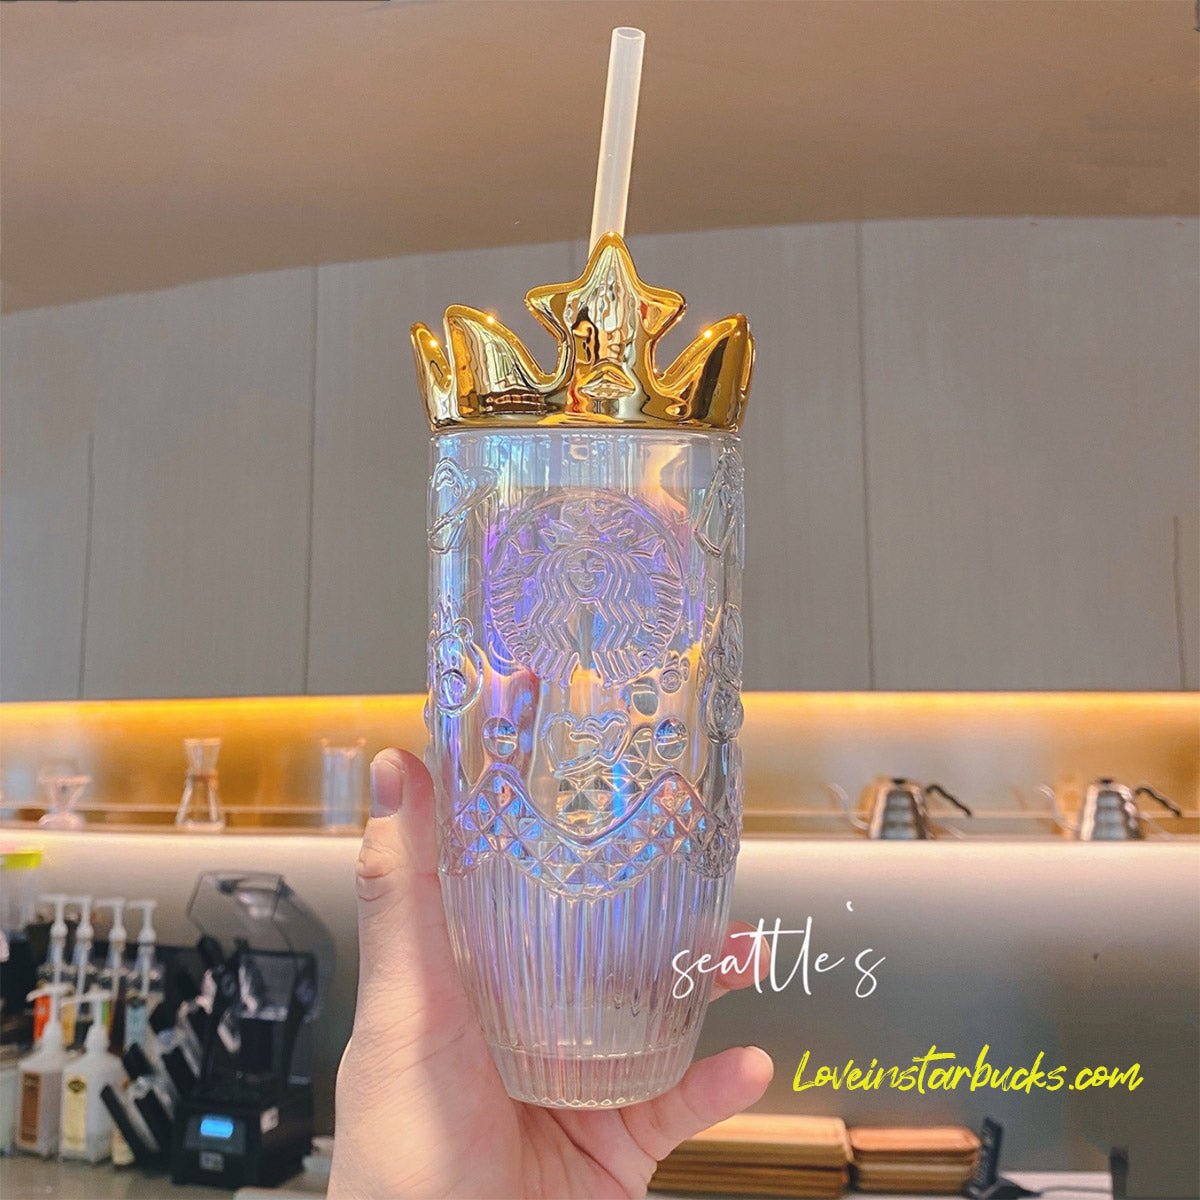 http://loveinstarbucks.com/cdn/shop/products/starbucks-china-colorful-crown-glass-351011_1200x1200.jpg?v=1674153211